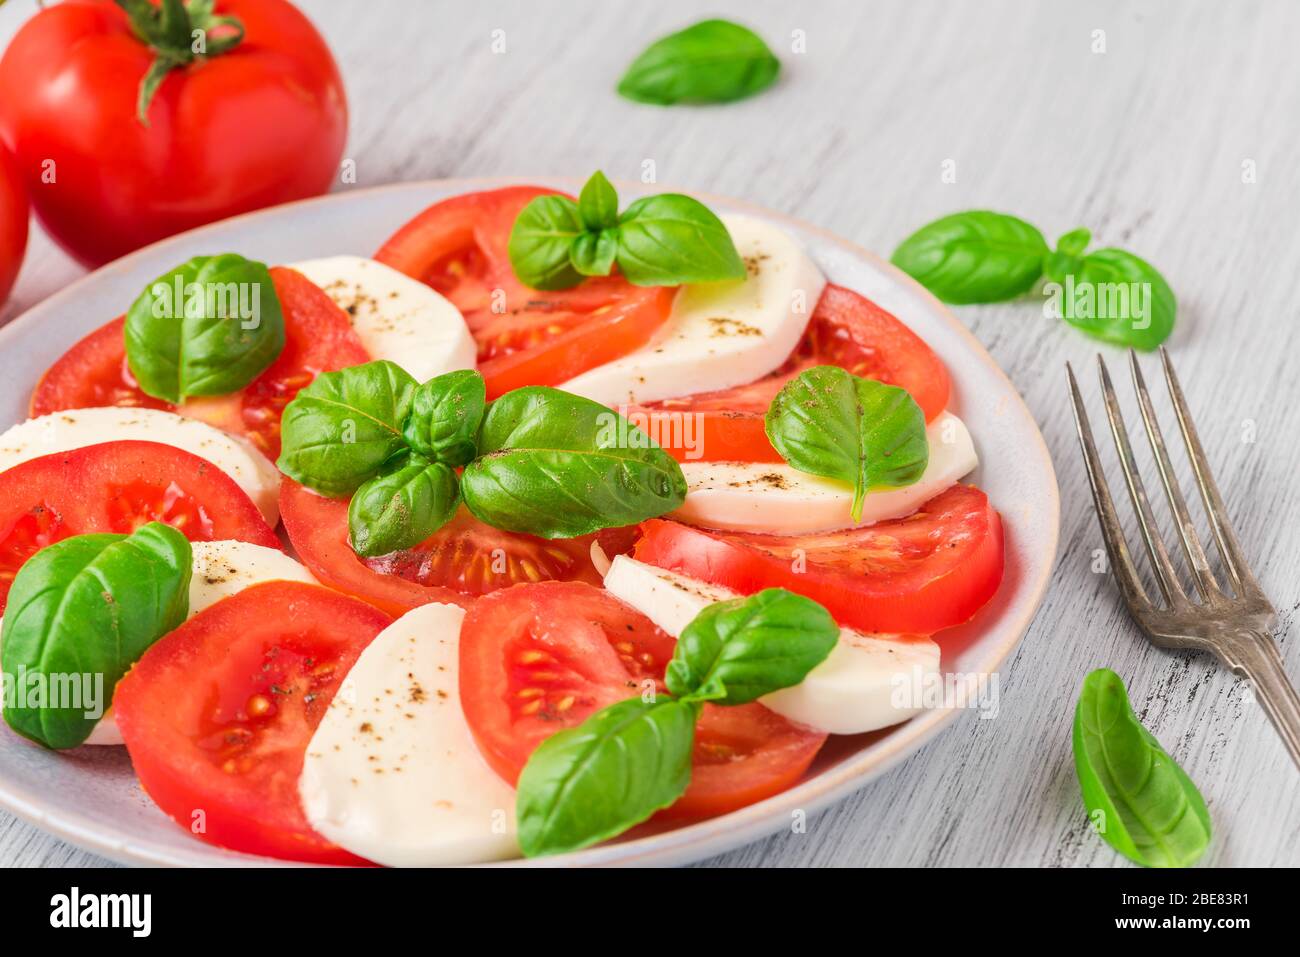 Insalata caprese con pomodori maturi e mozzarella con foglie di basilico fresco in un piatto con forchetta. Cucina italiana, vista dall'alto Foto Stock